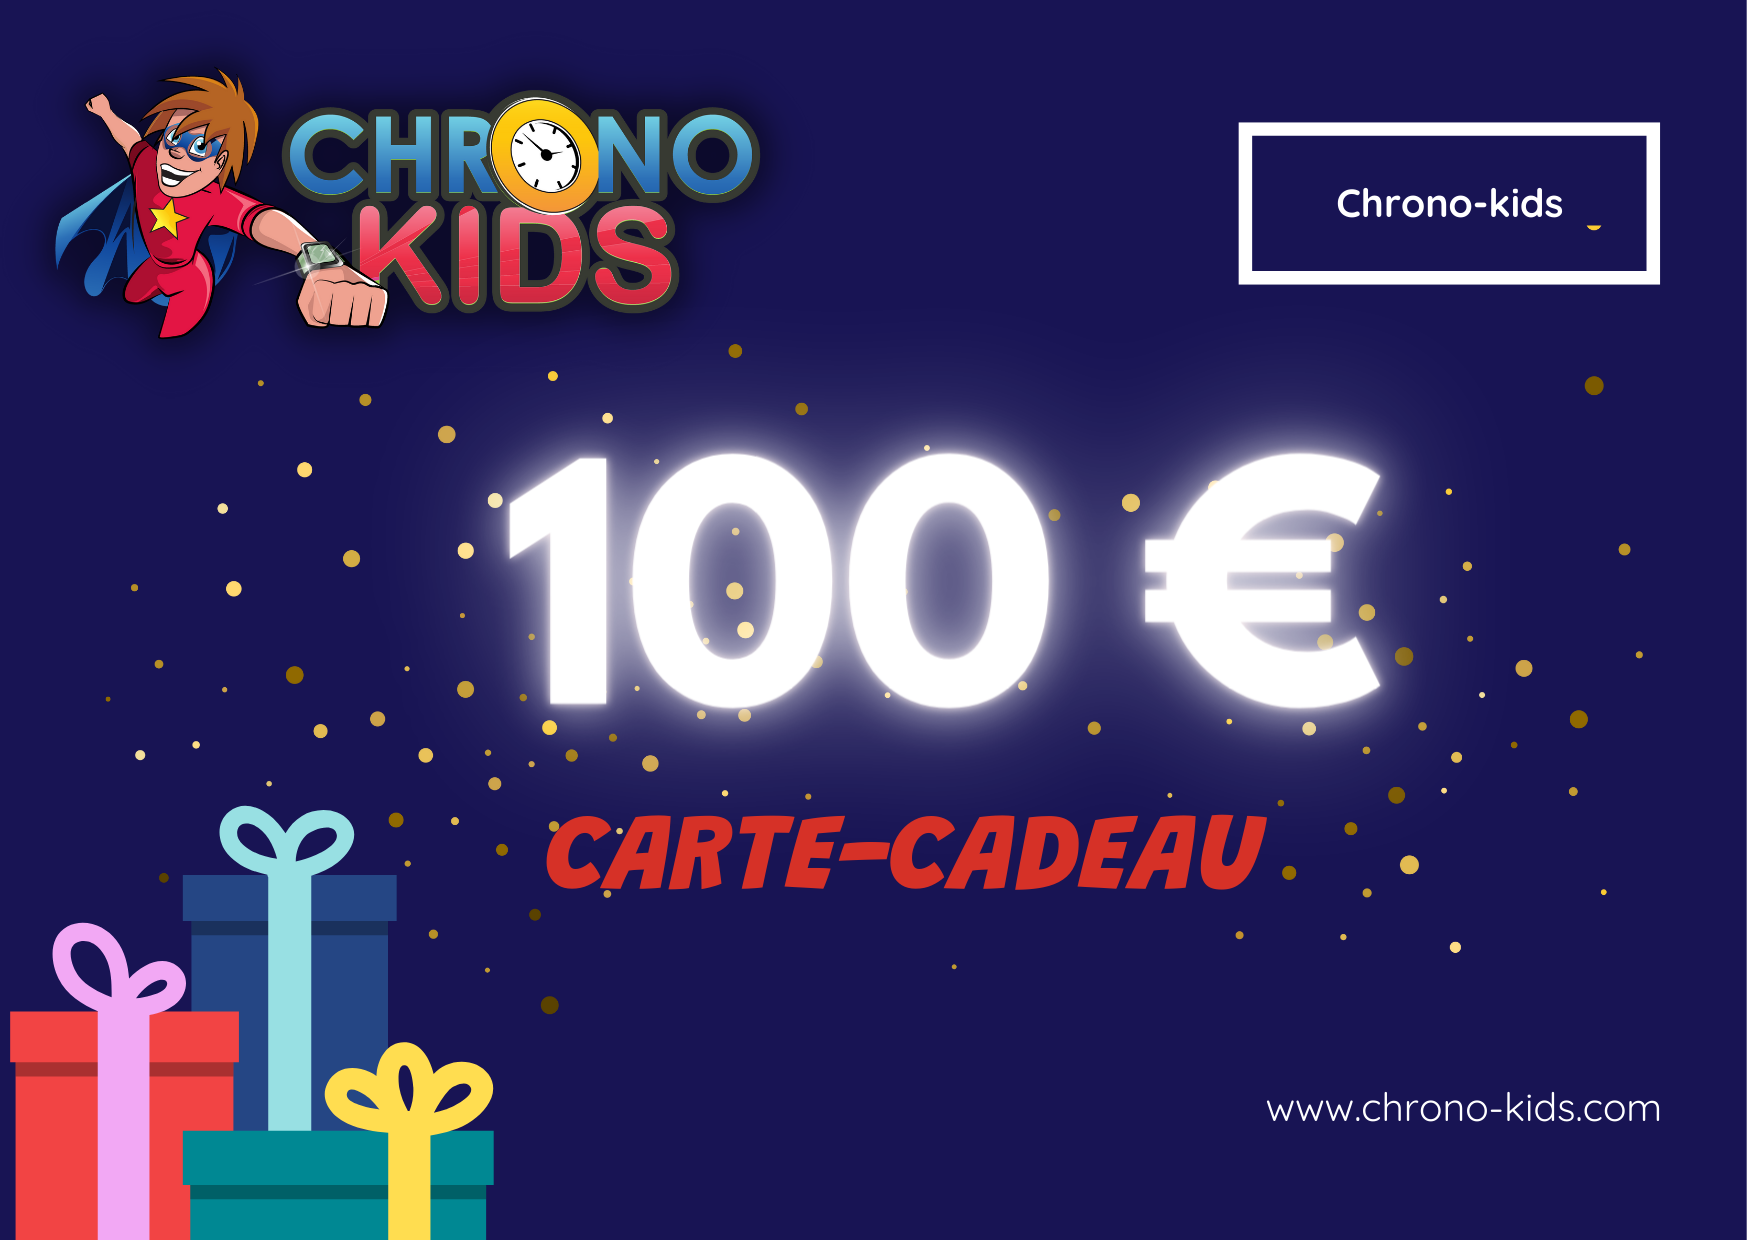 Carte Cadeaux Chrono-kids.com